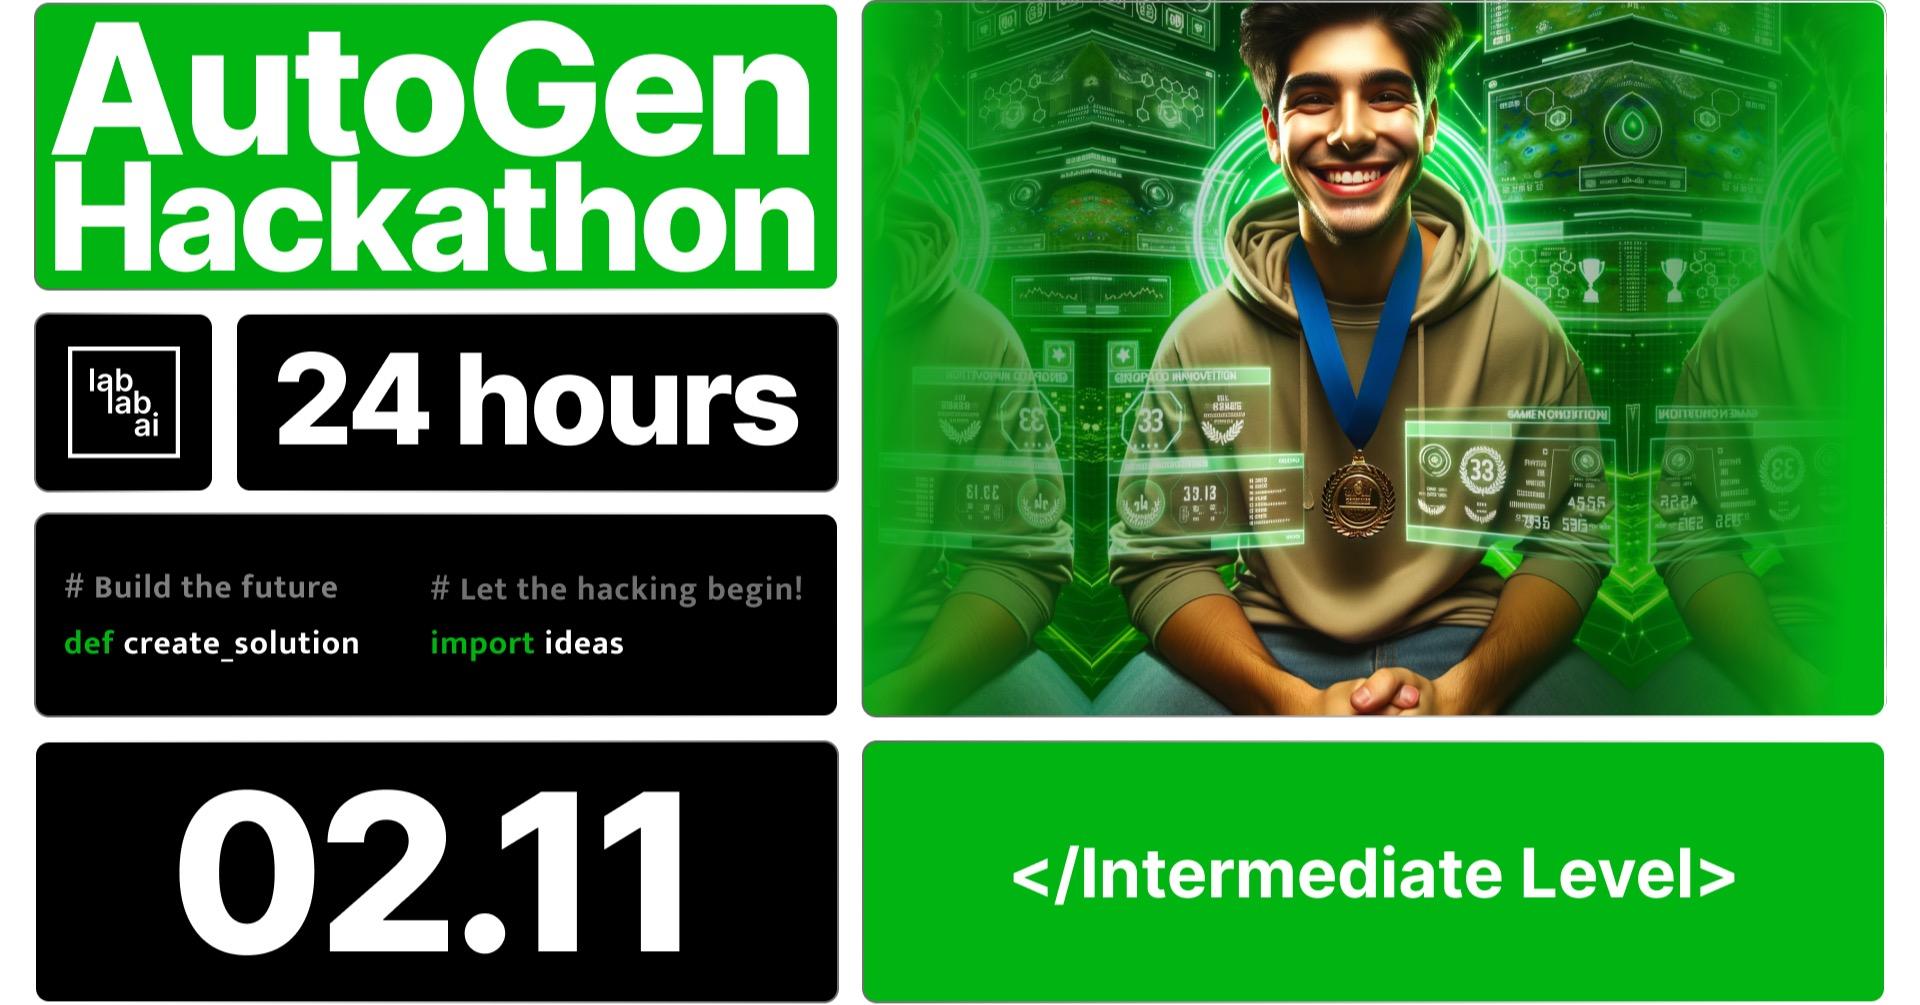 AutoGen 24-hours Hackathon image